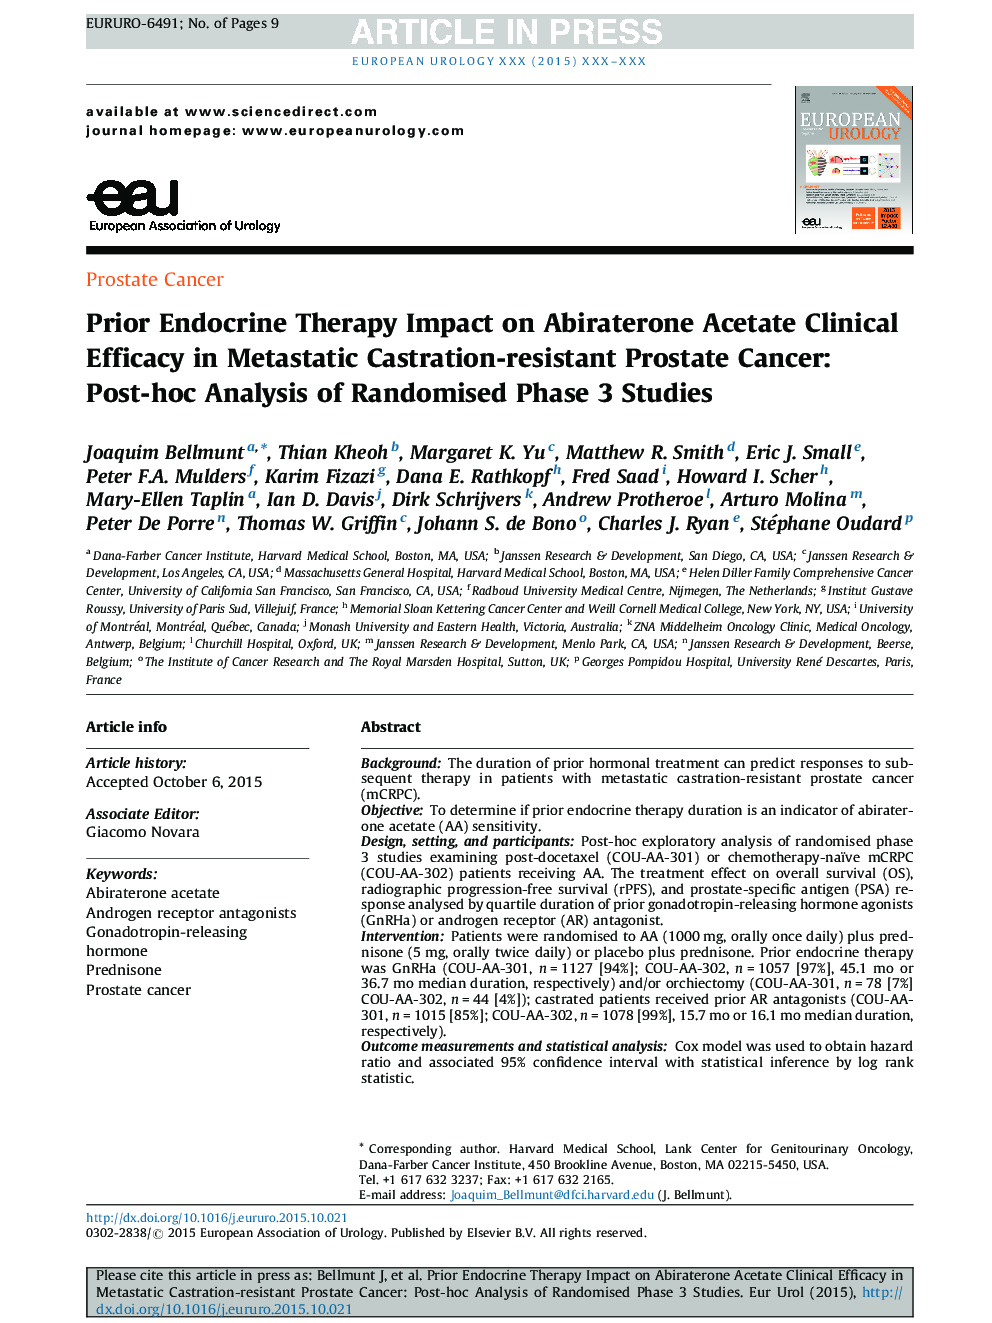 تأثیر درمان بالینی غدد درون ریز و متابولیسم در درمان سرطان پروستات مقاوم به کاستاریکا: تحلیلی پس از آن در مطالعات مرحله 3 تصادفی 